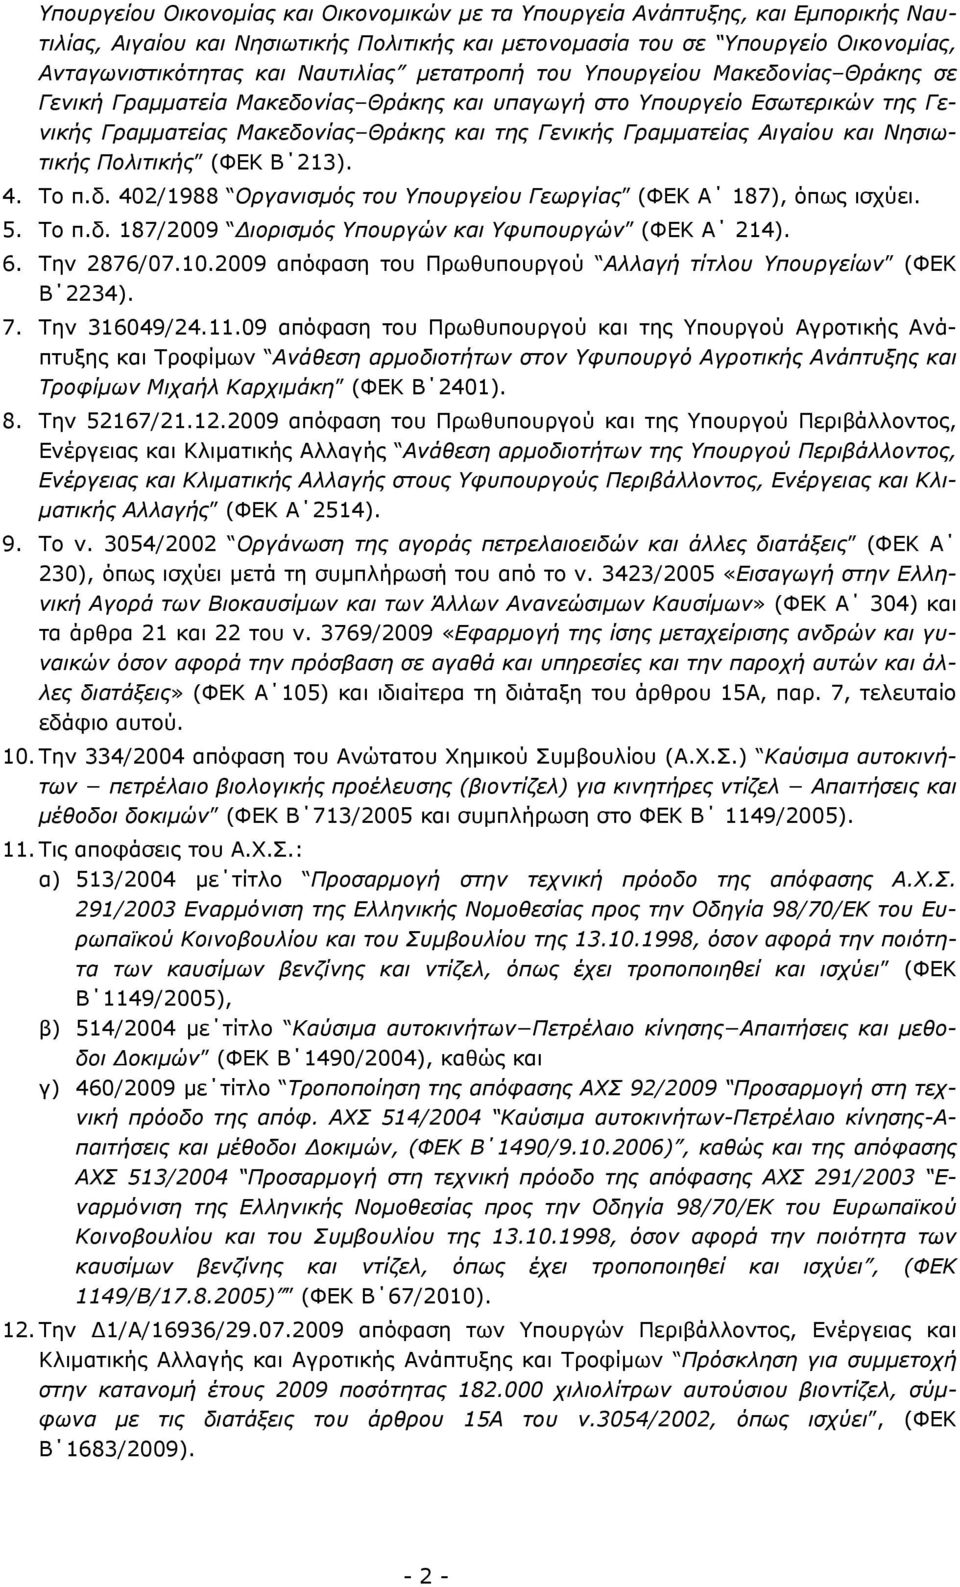 Αιγαίου και Νησιωτικής Πολιτικής (ΦΕΚ Β 213). 4. Το π.δ. 402/1988 Οργανισμός του Υπουργείου Γεωργίας (ΦΕΚ Α 187), όπως ισχύει. 5. Το π.δ. 187/2009 Διορισμός Υπουργών και Υφυπουργών (ΦΕΚ Α 214). 6.